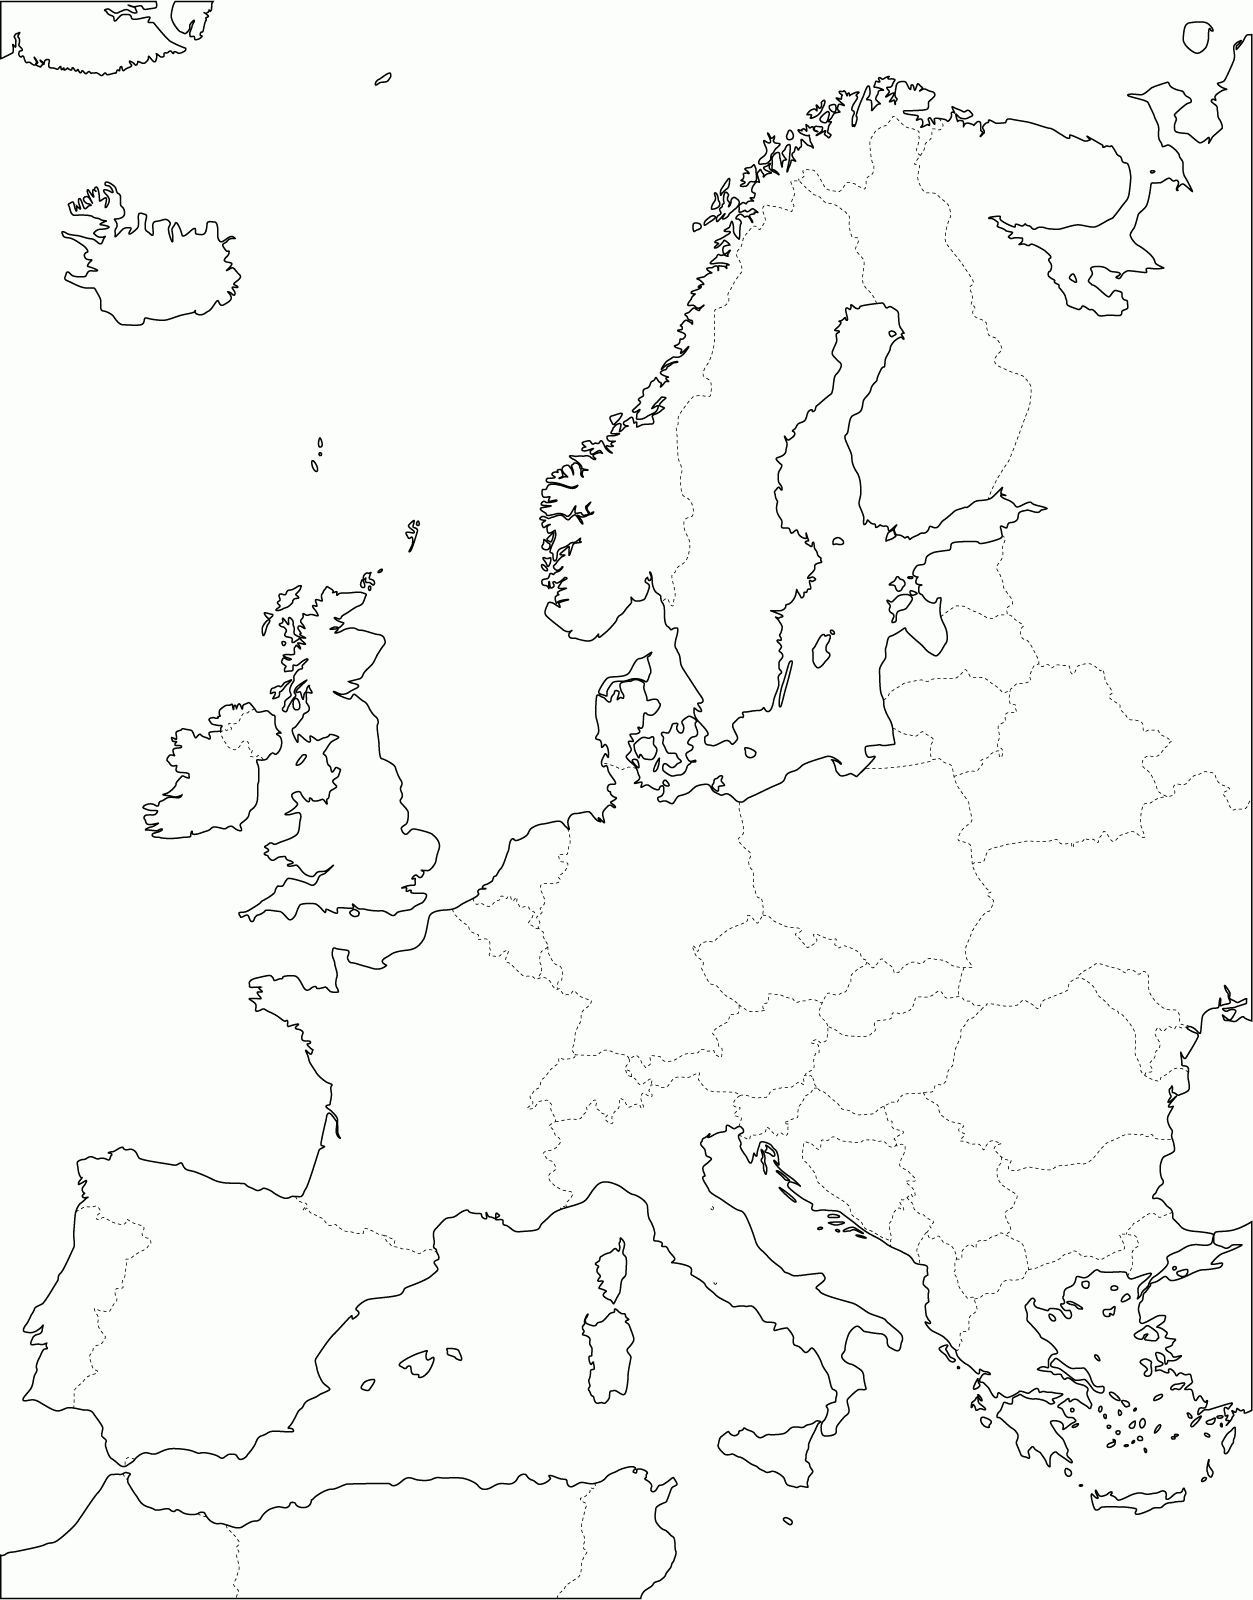 Grande Carte D'europe Vierge Et Blanche À Compléter | Carte concernant Carte Du Monde Vierge À Remplir En Ligne